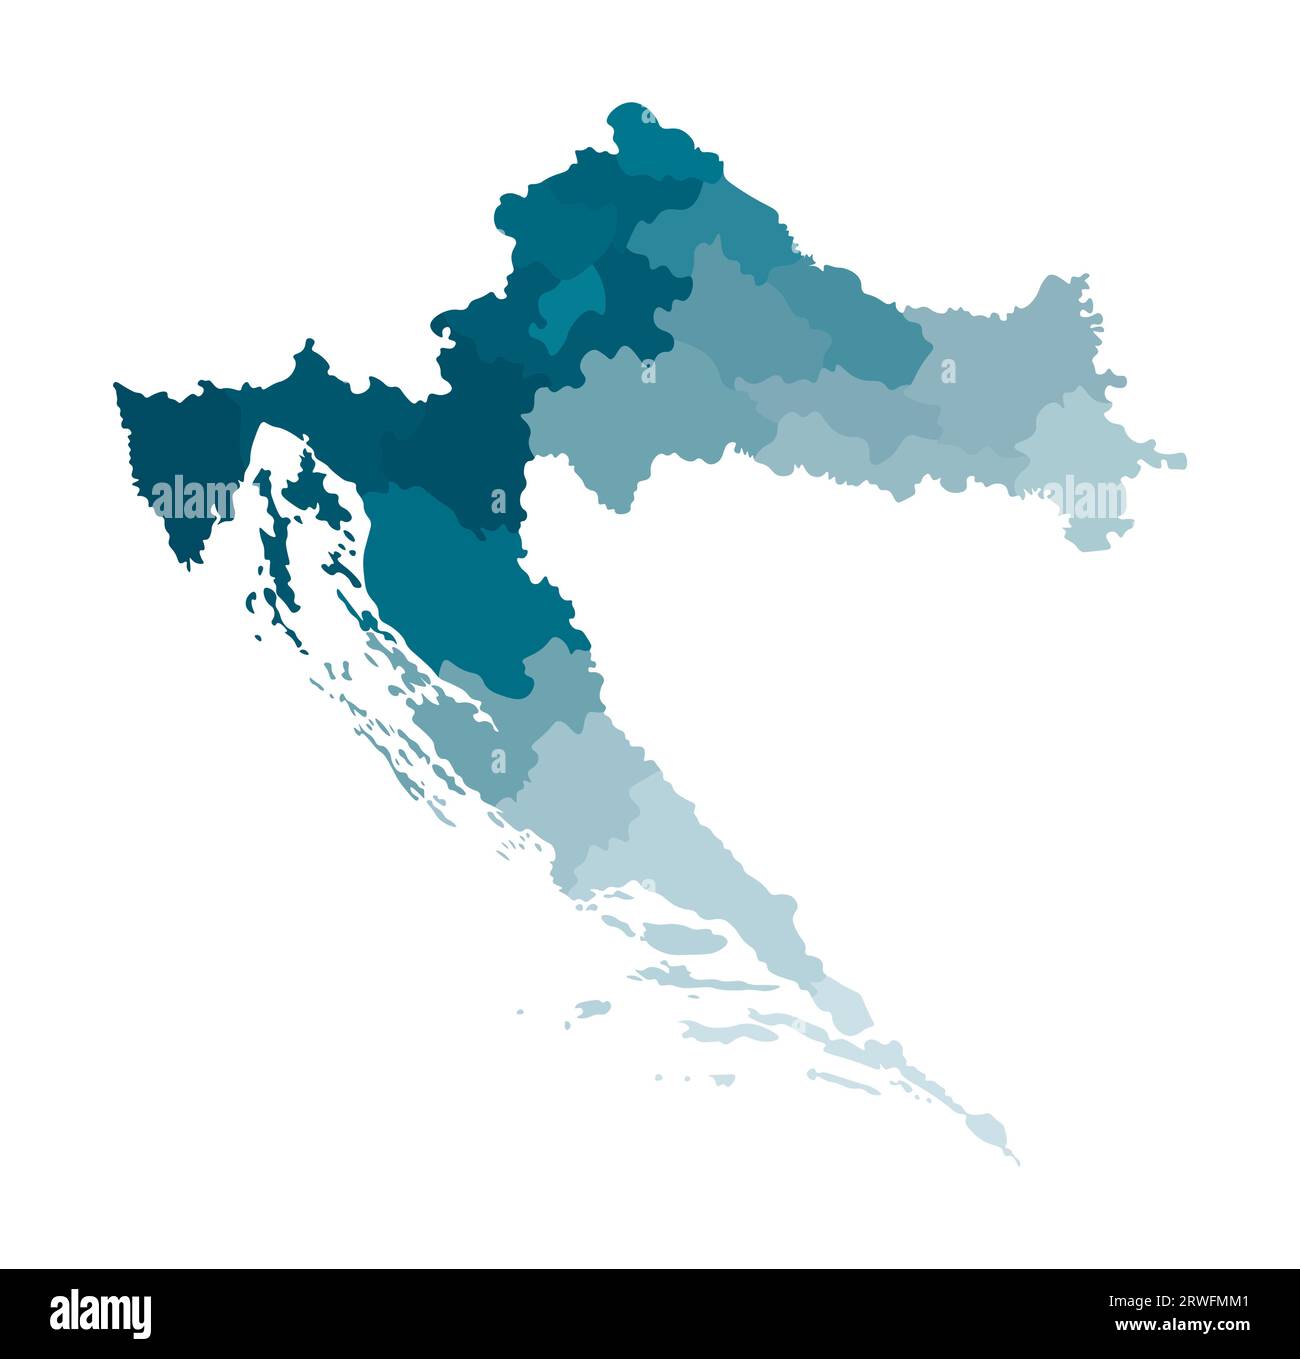 Vektor-isolierte Illustration einer vereinfachten Verwaltungskarte Kroatiens. Grenzen der Regionen. Farbenfrohe, khakifarbene Silhouetten. Stock Vektor